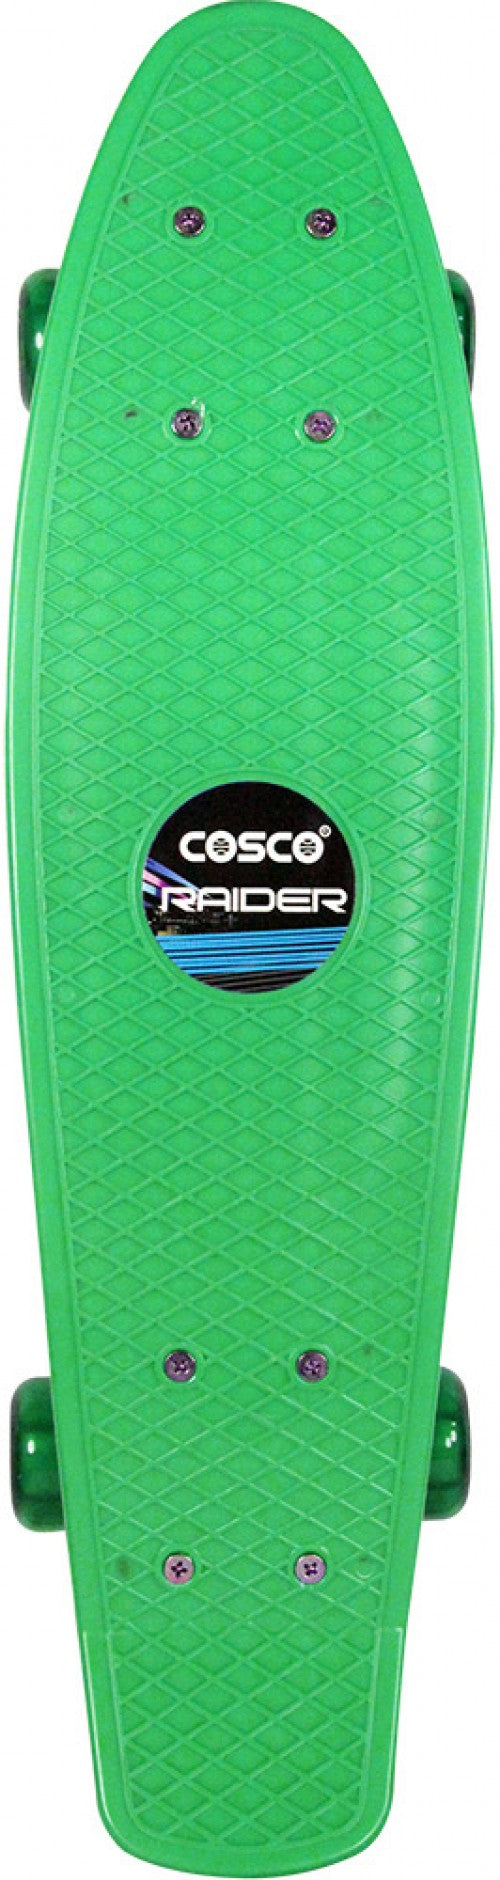 Cosco Raider Sr.